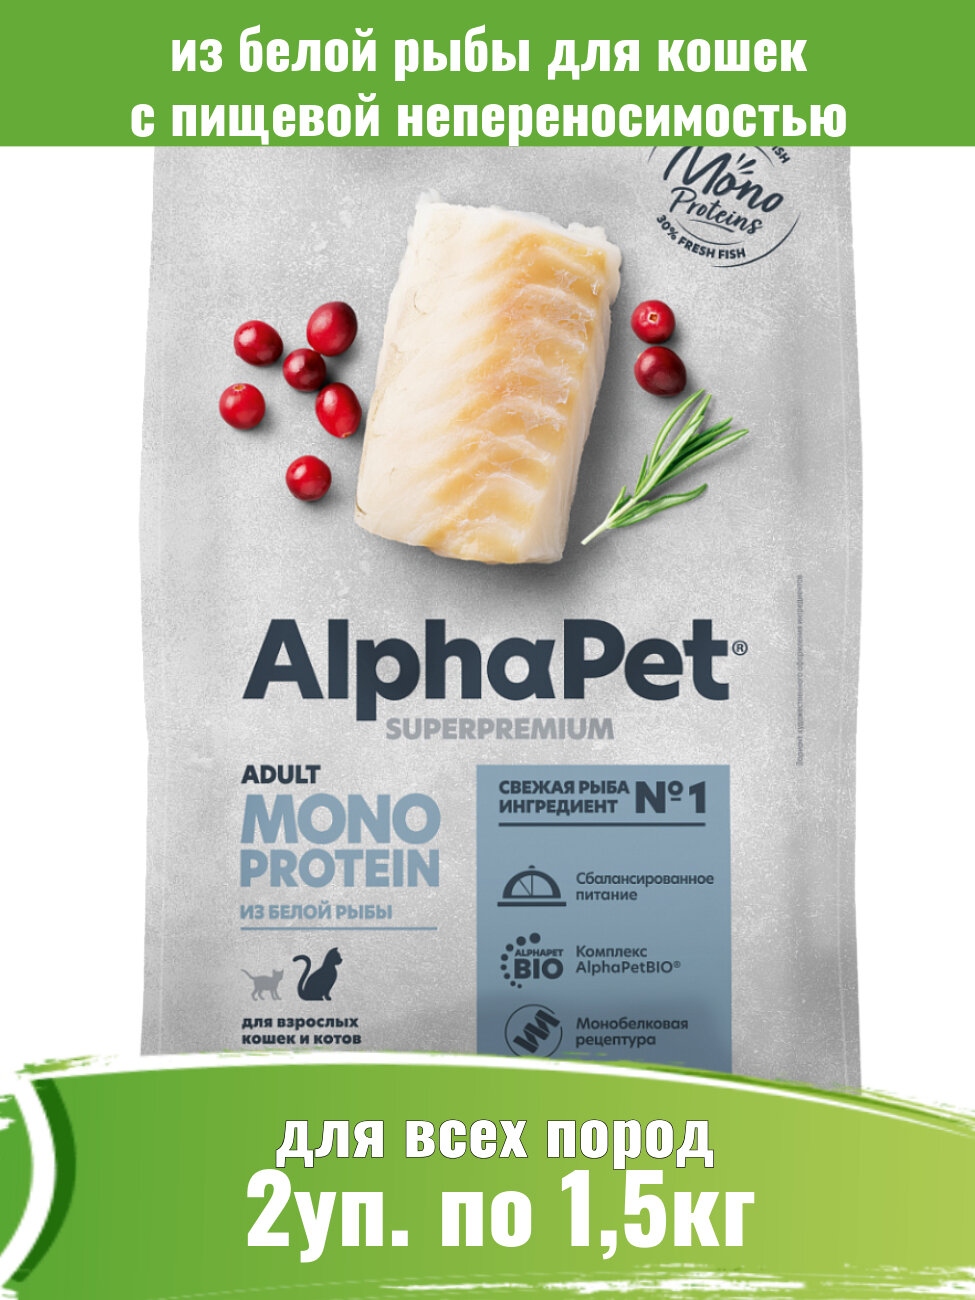 AlphaPet Monoprotein 2шт по 1,5кг корм для кошек из белой рыбы